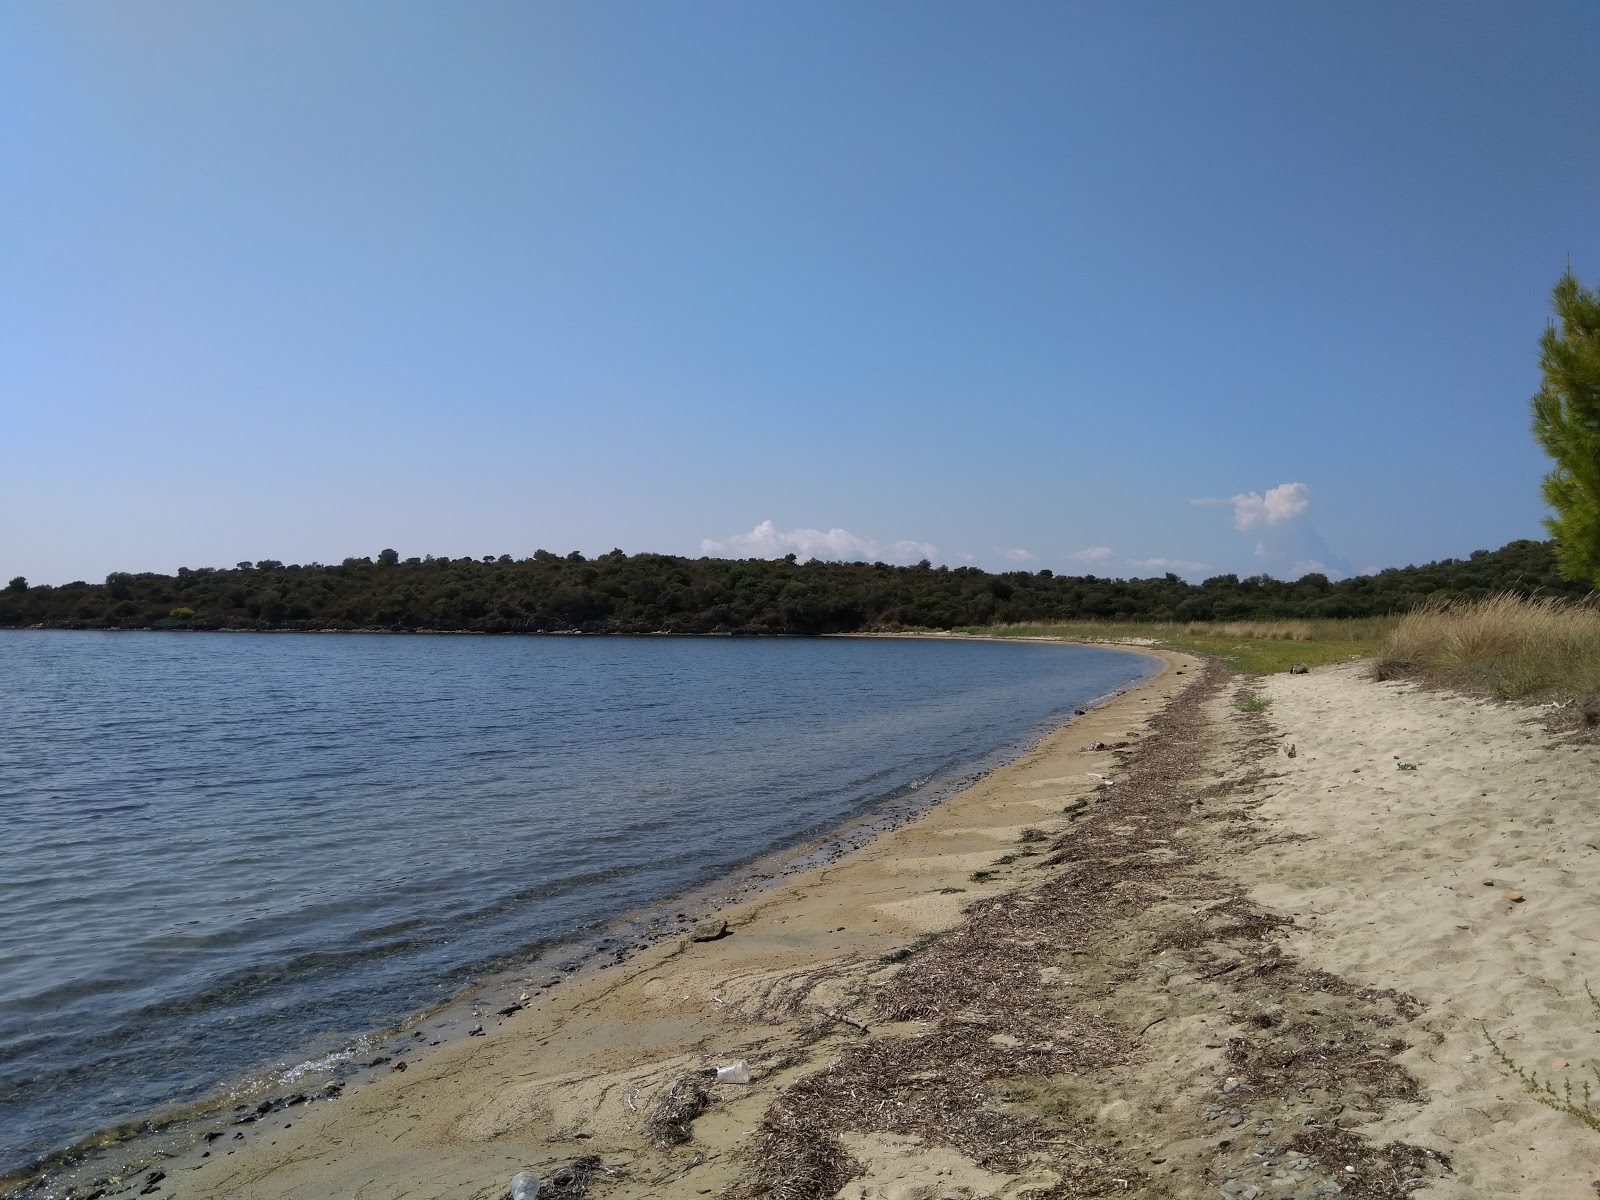 Foto de Azapiko beach IV com areia com seixos superfície